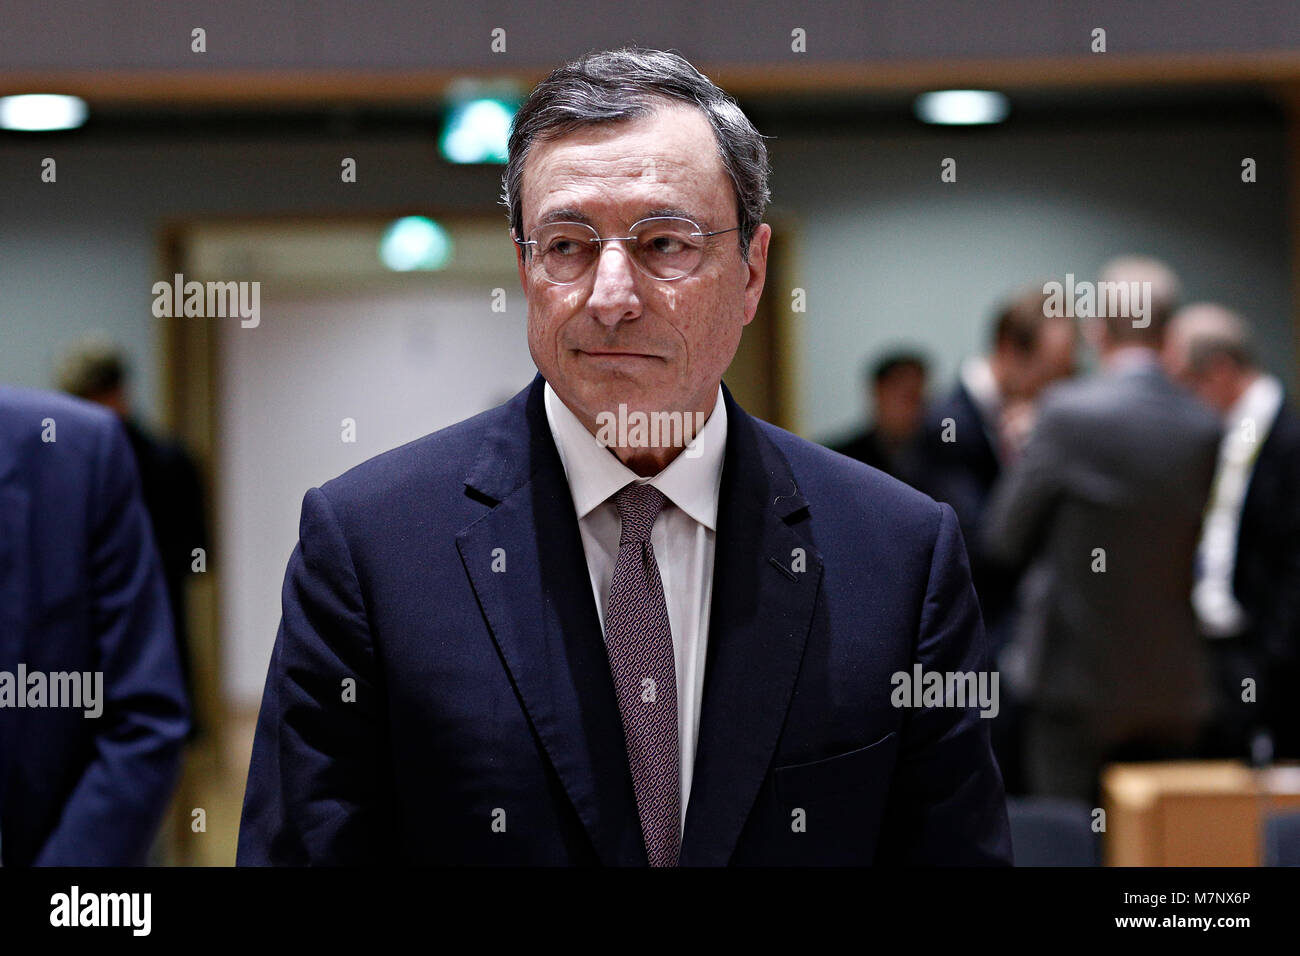 Brüssel, Belgien. 12. März, 2018. Präsident der Europäischen Zentralbank, Mario Draghi bei einem Treffen der Eurogruppe auf EU-Gebäude des Rates in Brüssel, Belgien, am 12. März 2018. Alexandros Michailidis/Alamy leben Nachrichten Stockfoto